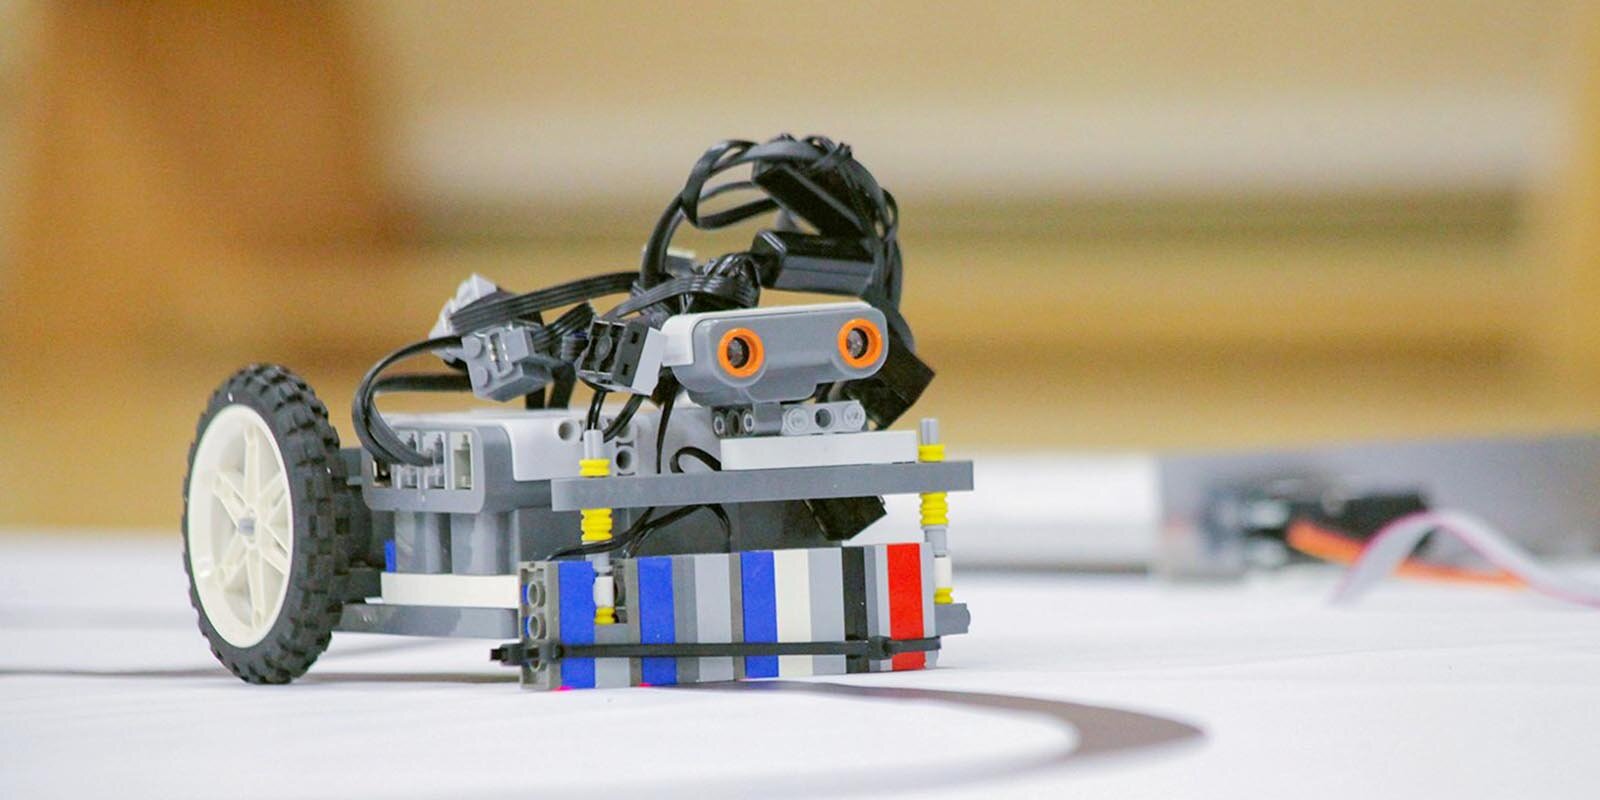 В библиотеке «МЭШ» появилась виртуальная лаборатория для занятий робототехникой